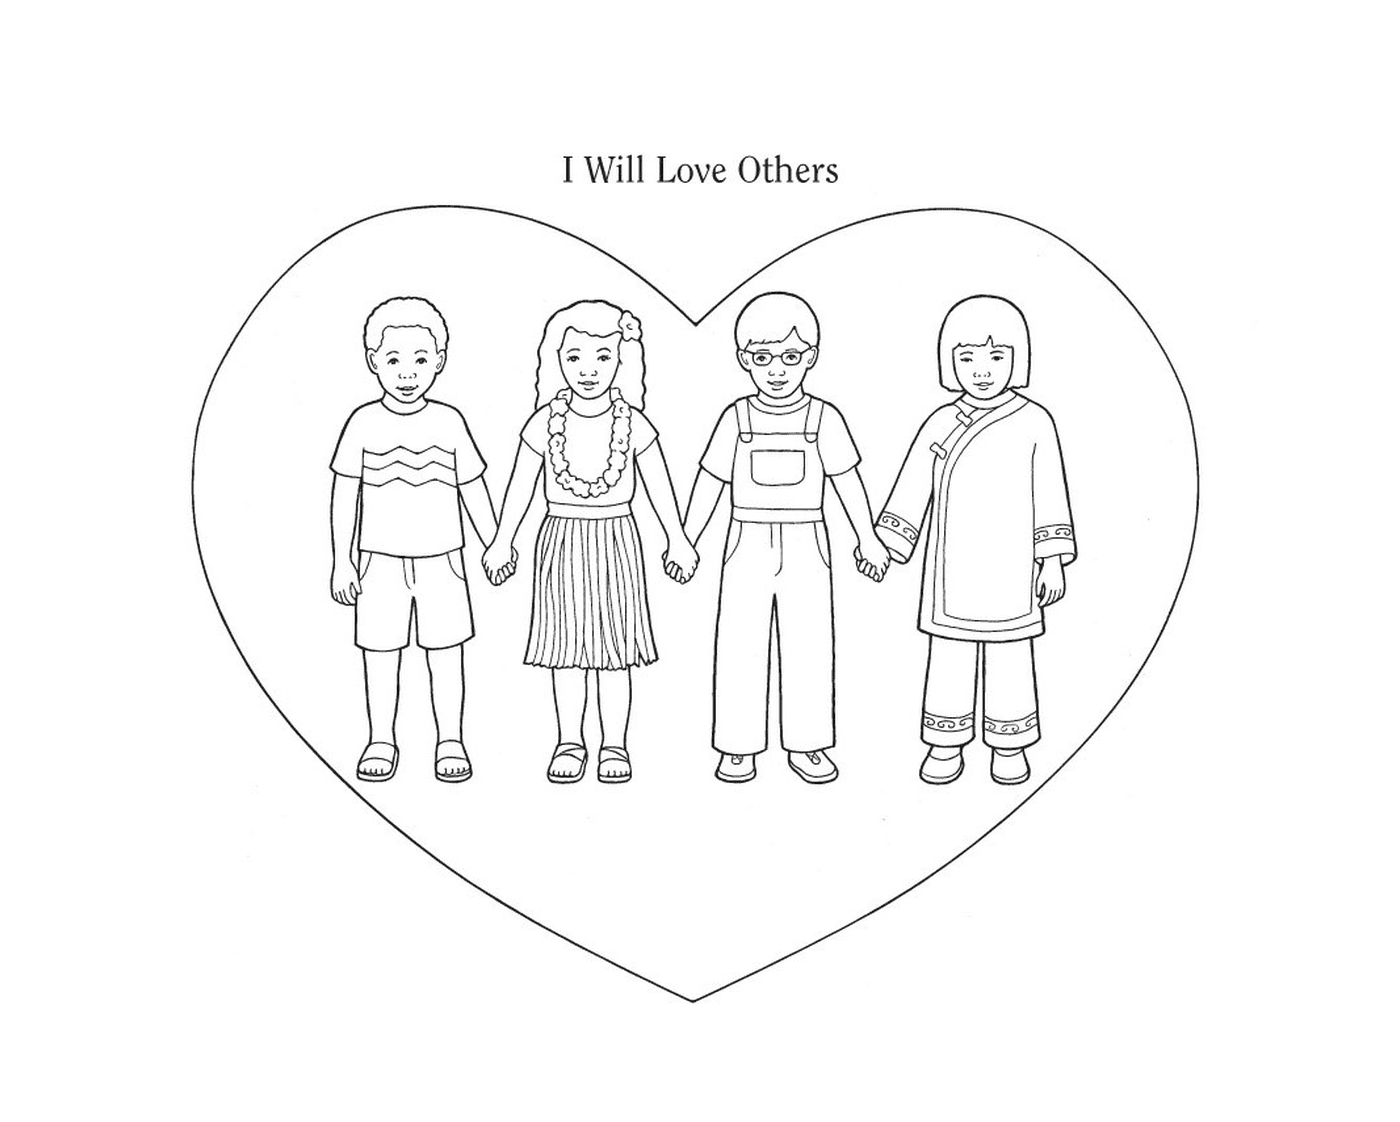  Quatro crianças de mãos dadas na frente de um coração 